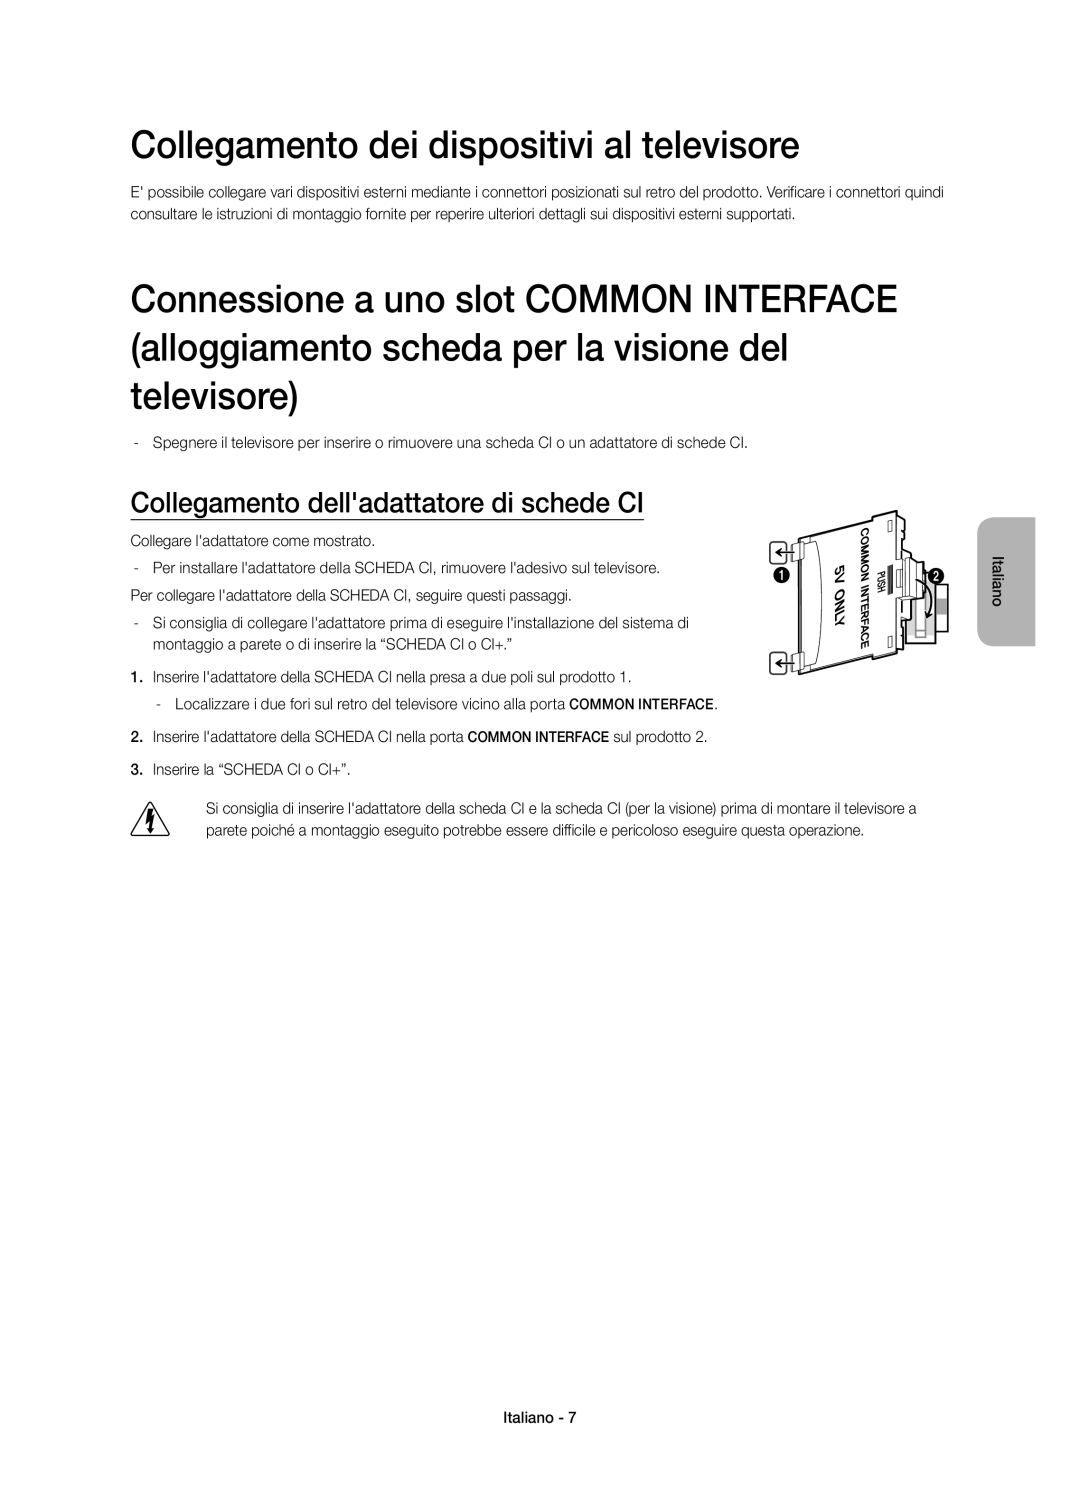 Samsung UE48H5570SSXZG manual Collegamento dei dispositivi al televisore, Collegamento delladattatore di schede CI 